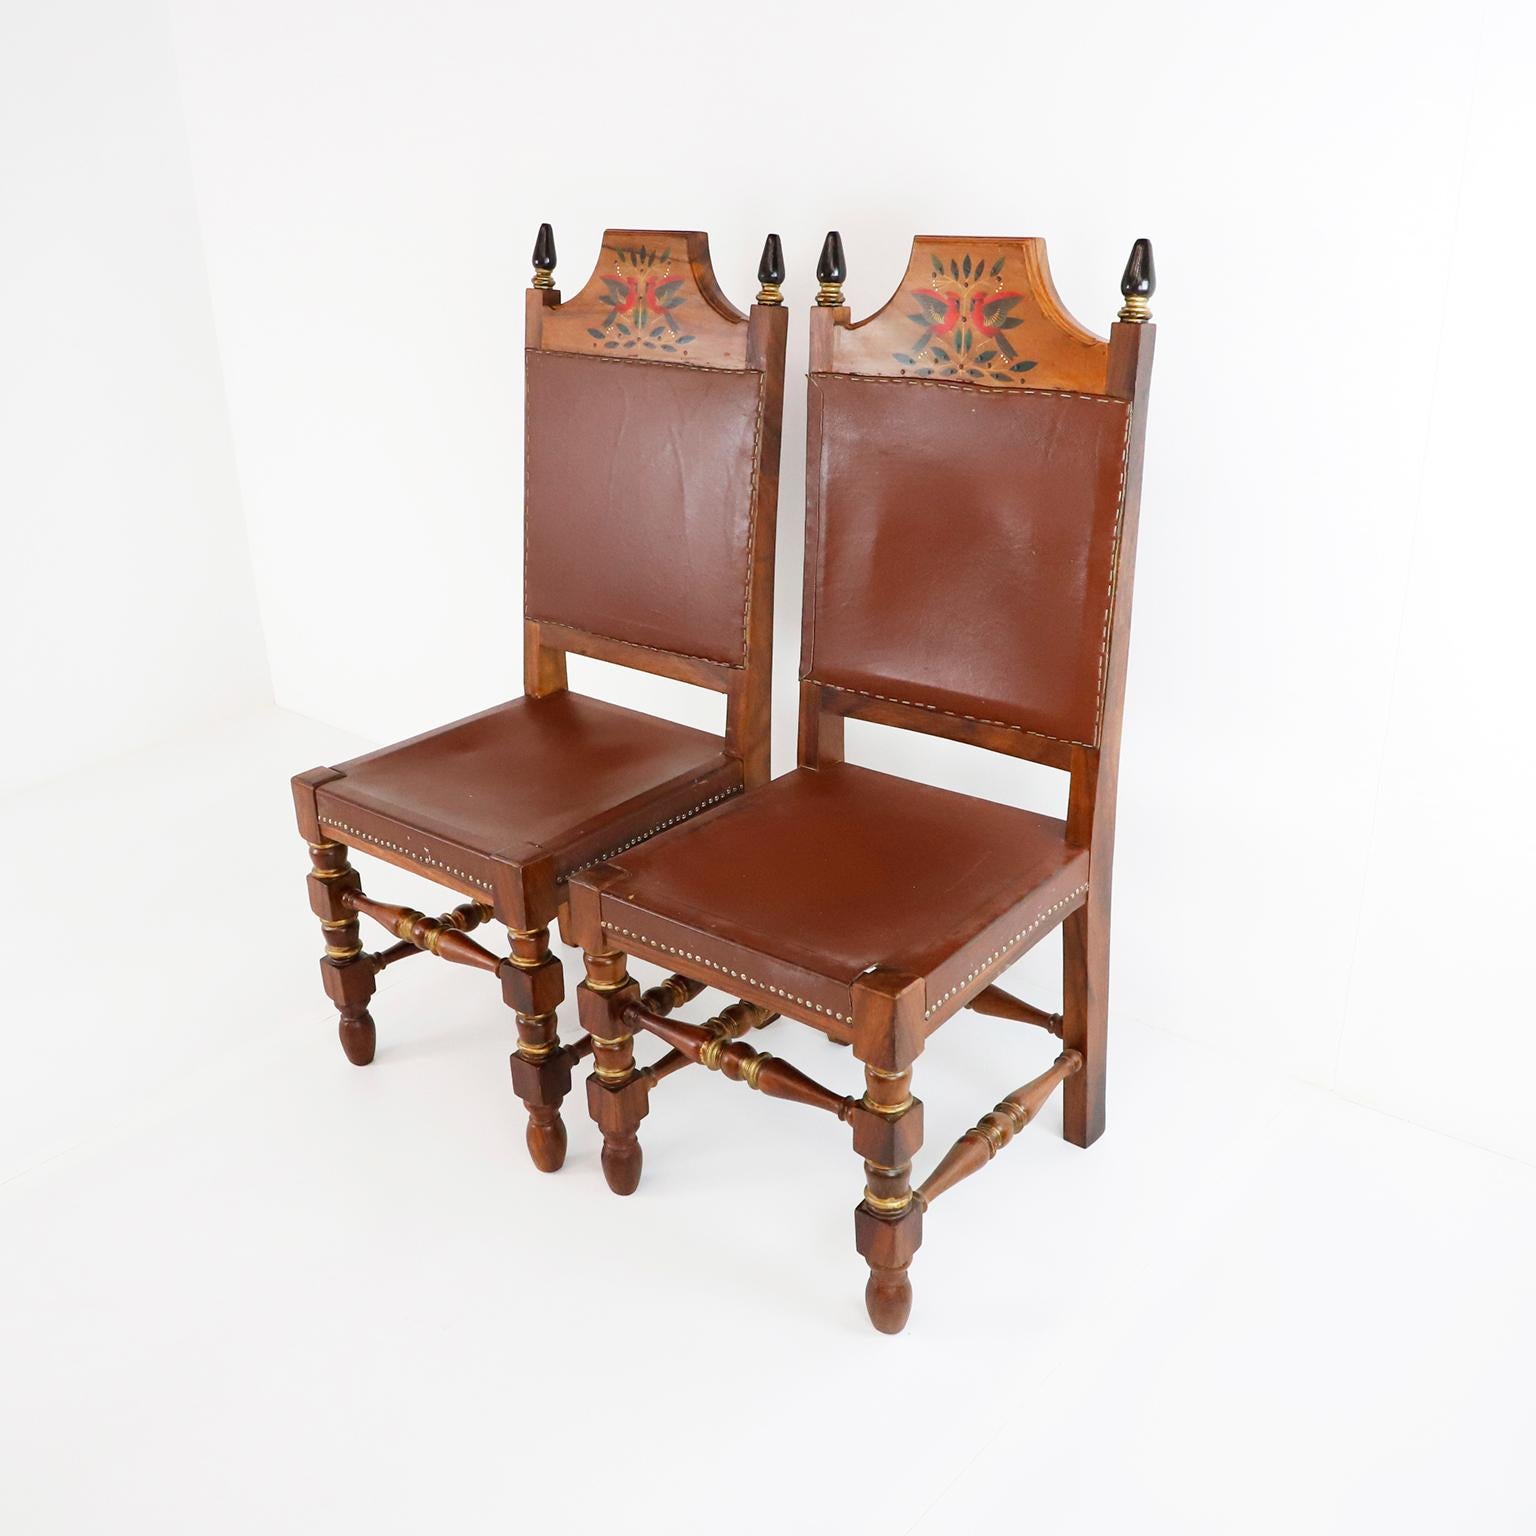 Um 1960, Wir bieten dieses fantastische Set von vier mexikanischen Stühlen an, die von Alejandro Rangel Hidalgo entworfen und handbemalt wurden und aus massivem Parota-Holz bestehen.

Alejandro Rangel Hidalgo (1923-2000) war ein mexikanischer